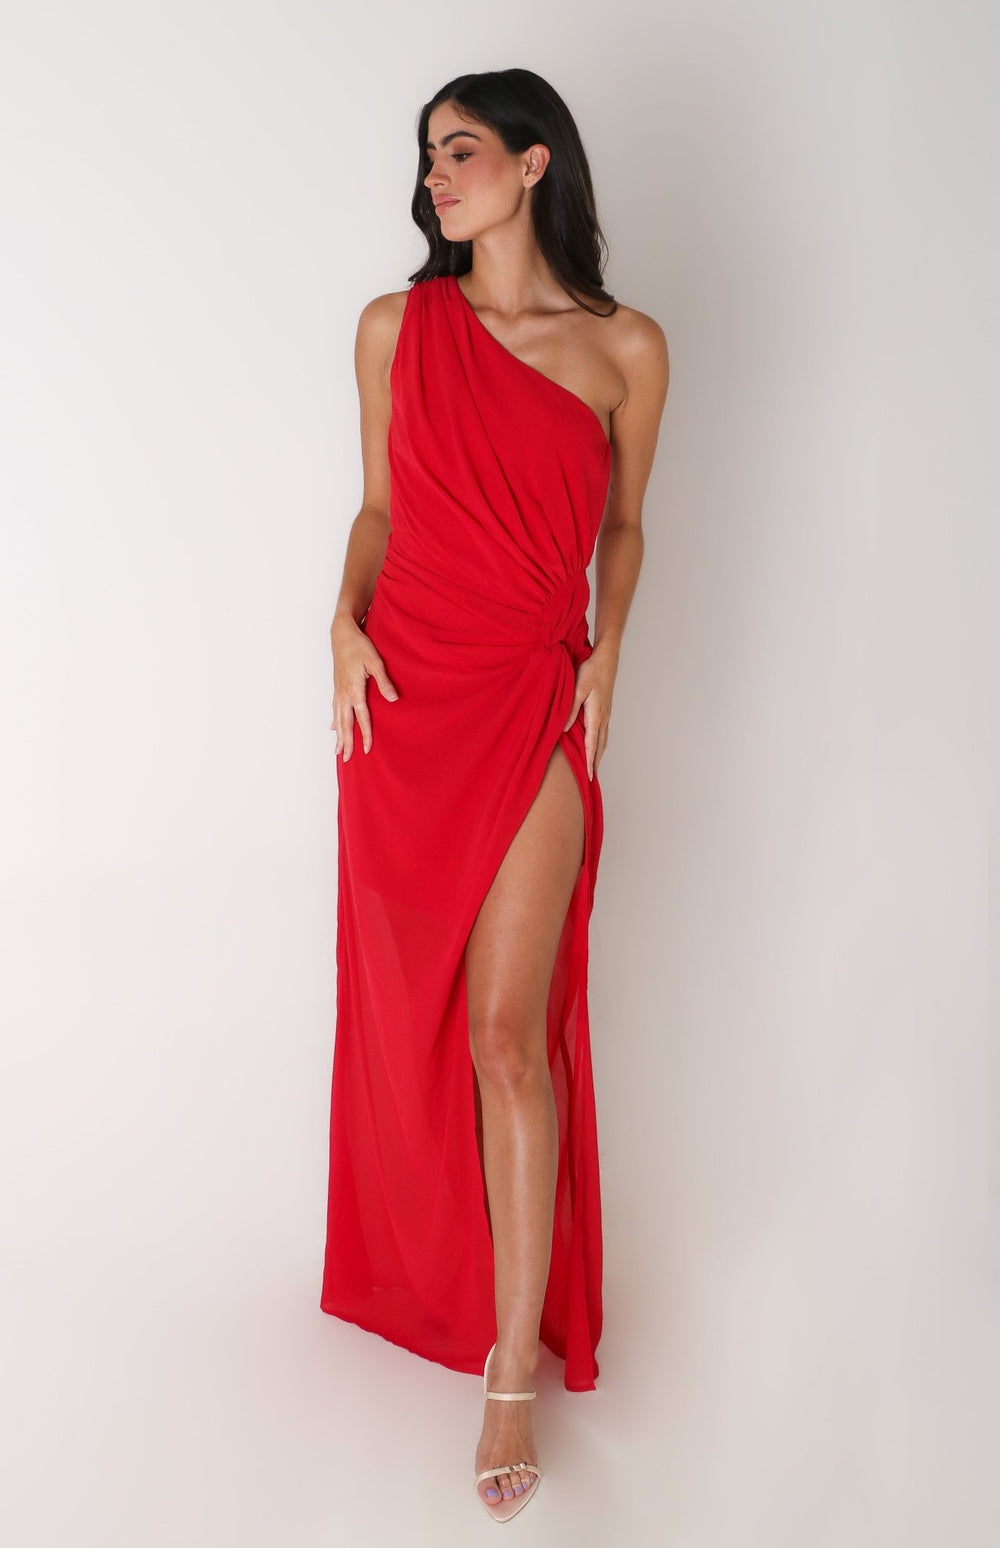 Layla - rojo - Lend the Trend renta de vestidos mexico